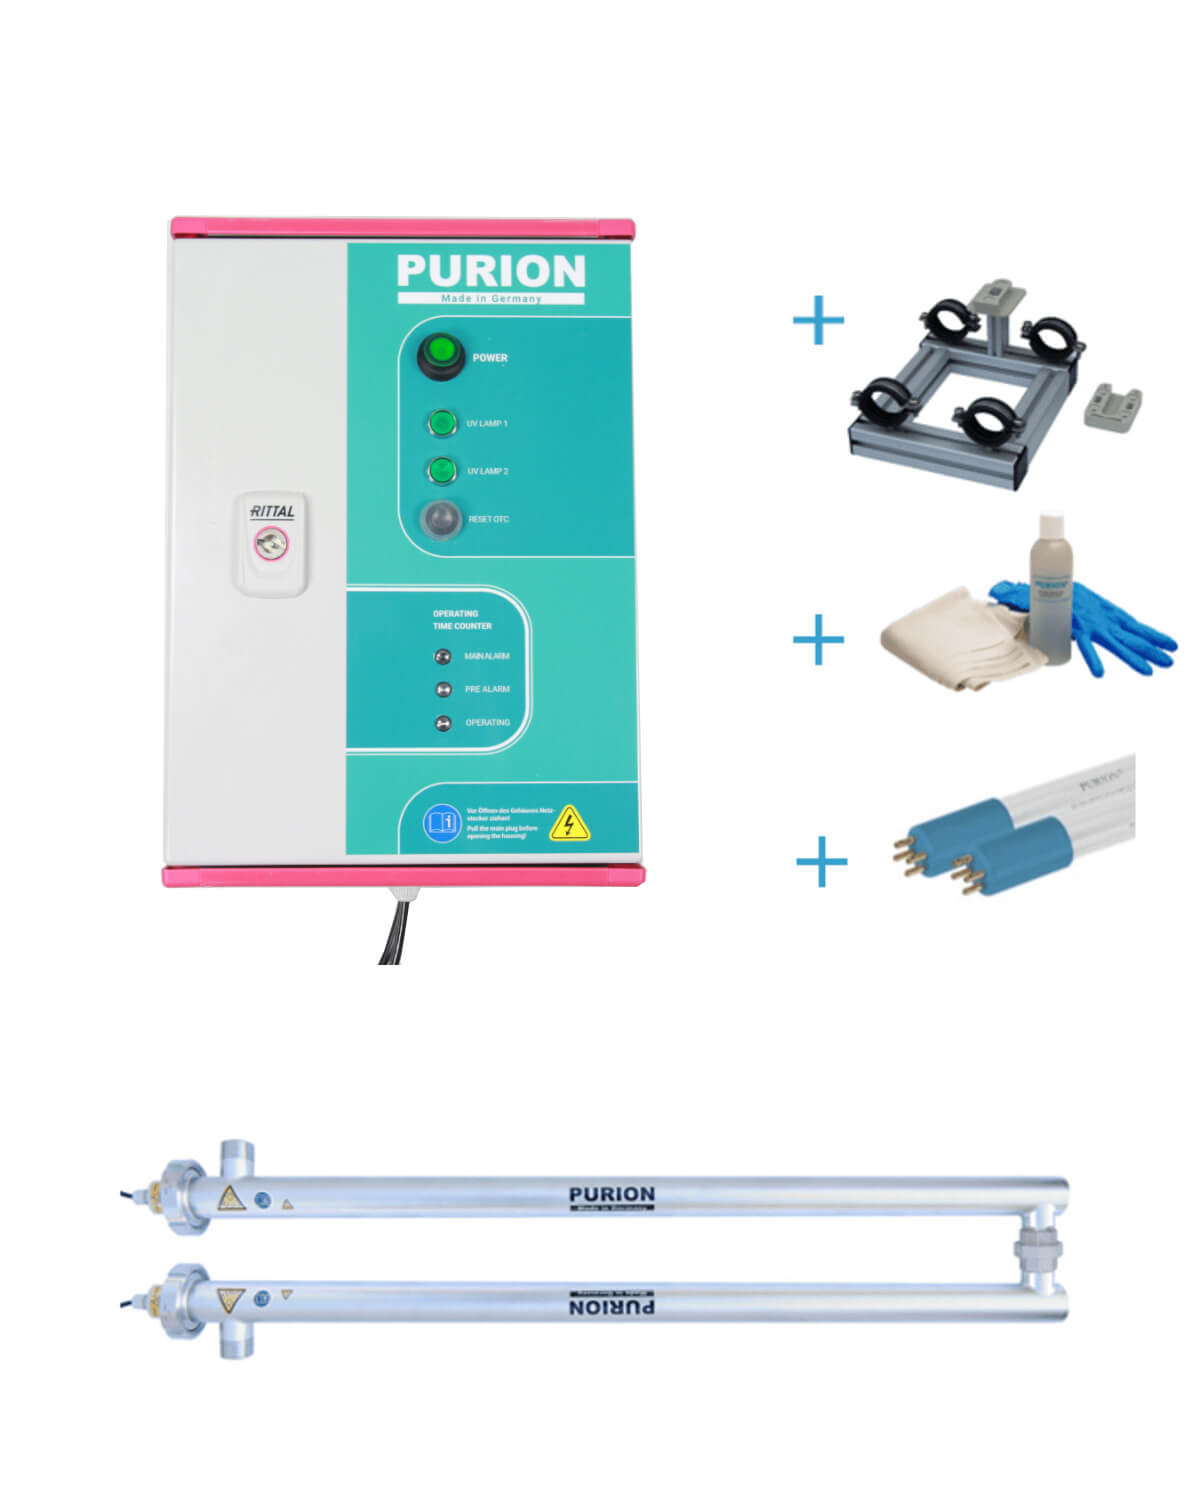 Die Purion GmbH ist ein führender Anbieter von UV-C-Desinfektionslösungen. Unser Flaggschiffprodukt, das PURION 2500 H DUAL OTC Bundle, bietet leistungsstarke Desinfektionsmöglichkeiten, die schädliche Legionellen wirksam beseitigen.